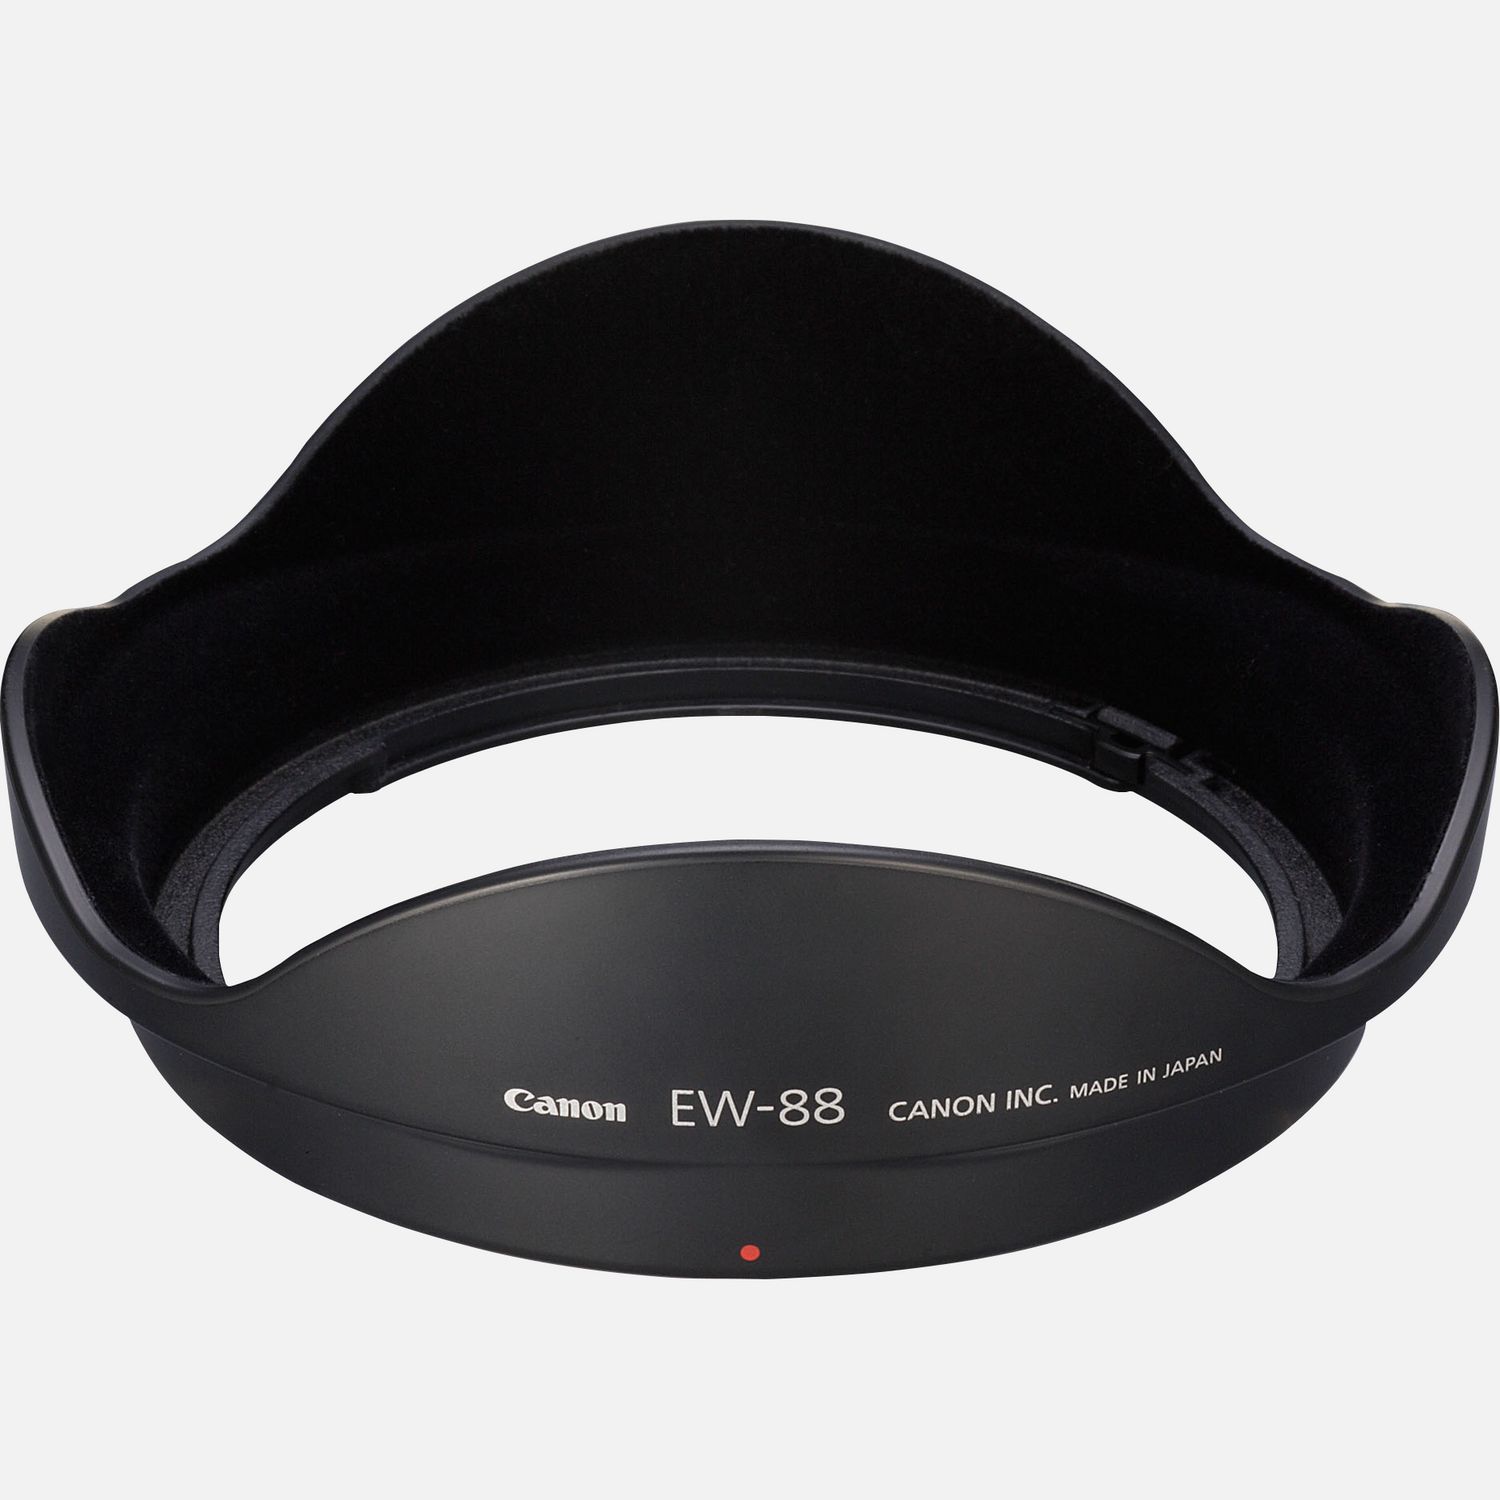 Passt auf das Objektiv EF 16-35mm 1:2,8L II USM, reduziert Reflexionen, die durch direkt auf die Frontlinse auffallendes Licht hervorgerufen werden.